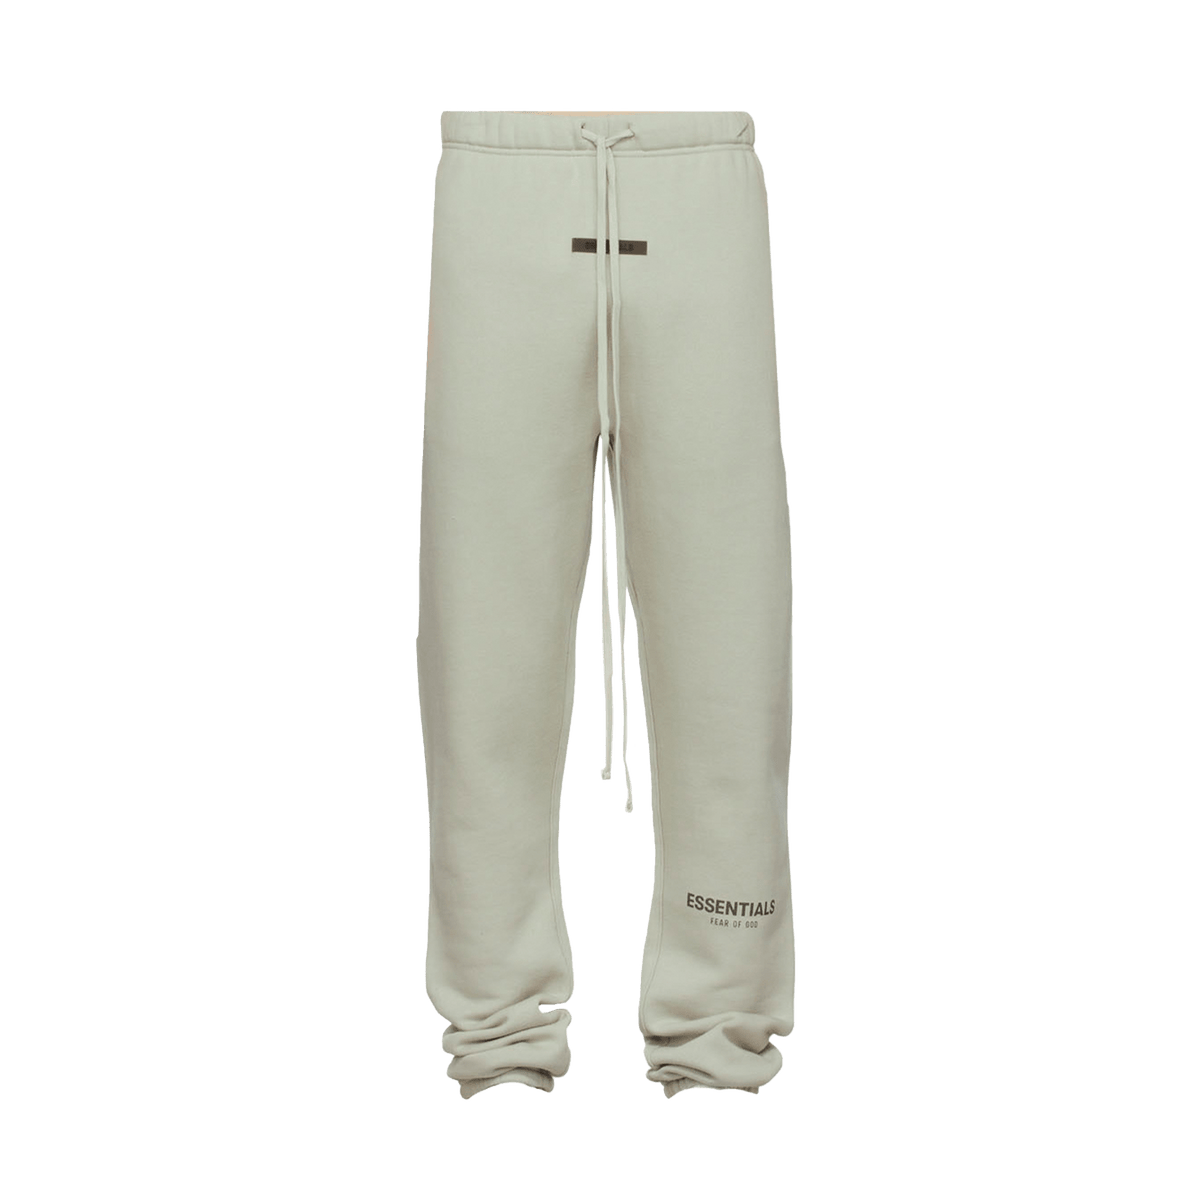 Contrast High Waist Cotton Denim Shorts Essentials SSENSE Exclusive Fleece Lounge Pants Concrete - UrlfreezeShops